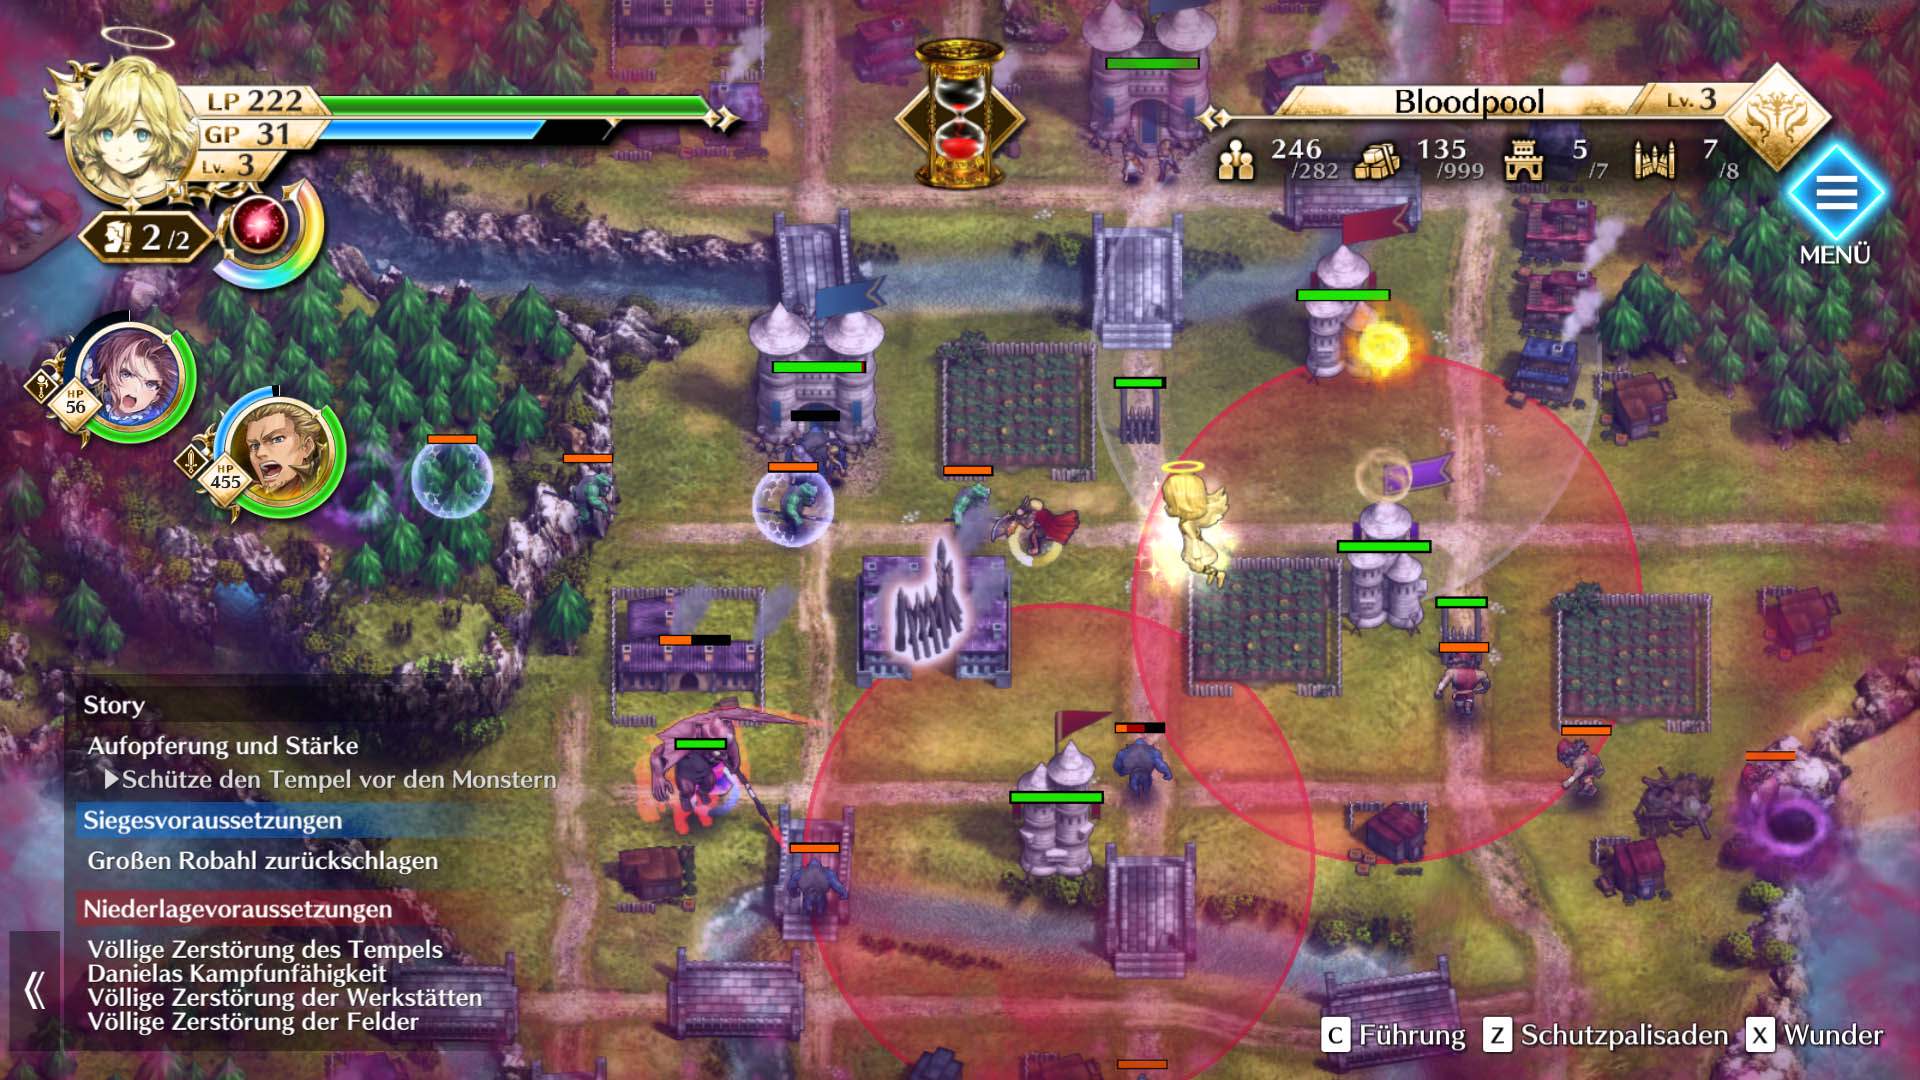 Gameplay-Screenshot von Actraiser Renaissance, in dem eine Stadt gegen Feinde verteidigt wird.